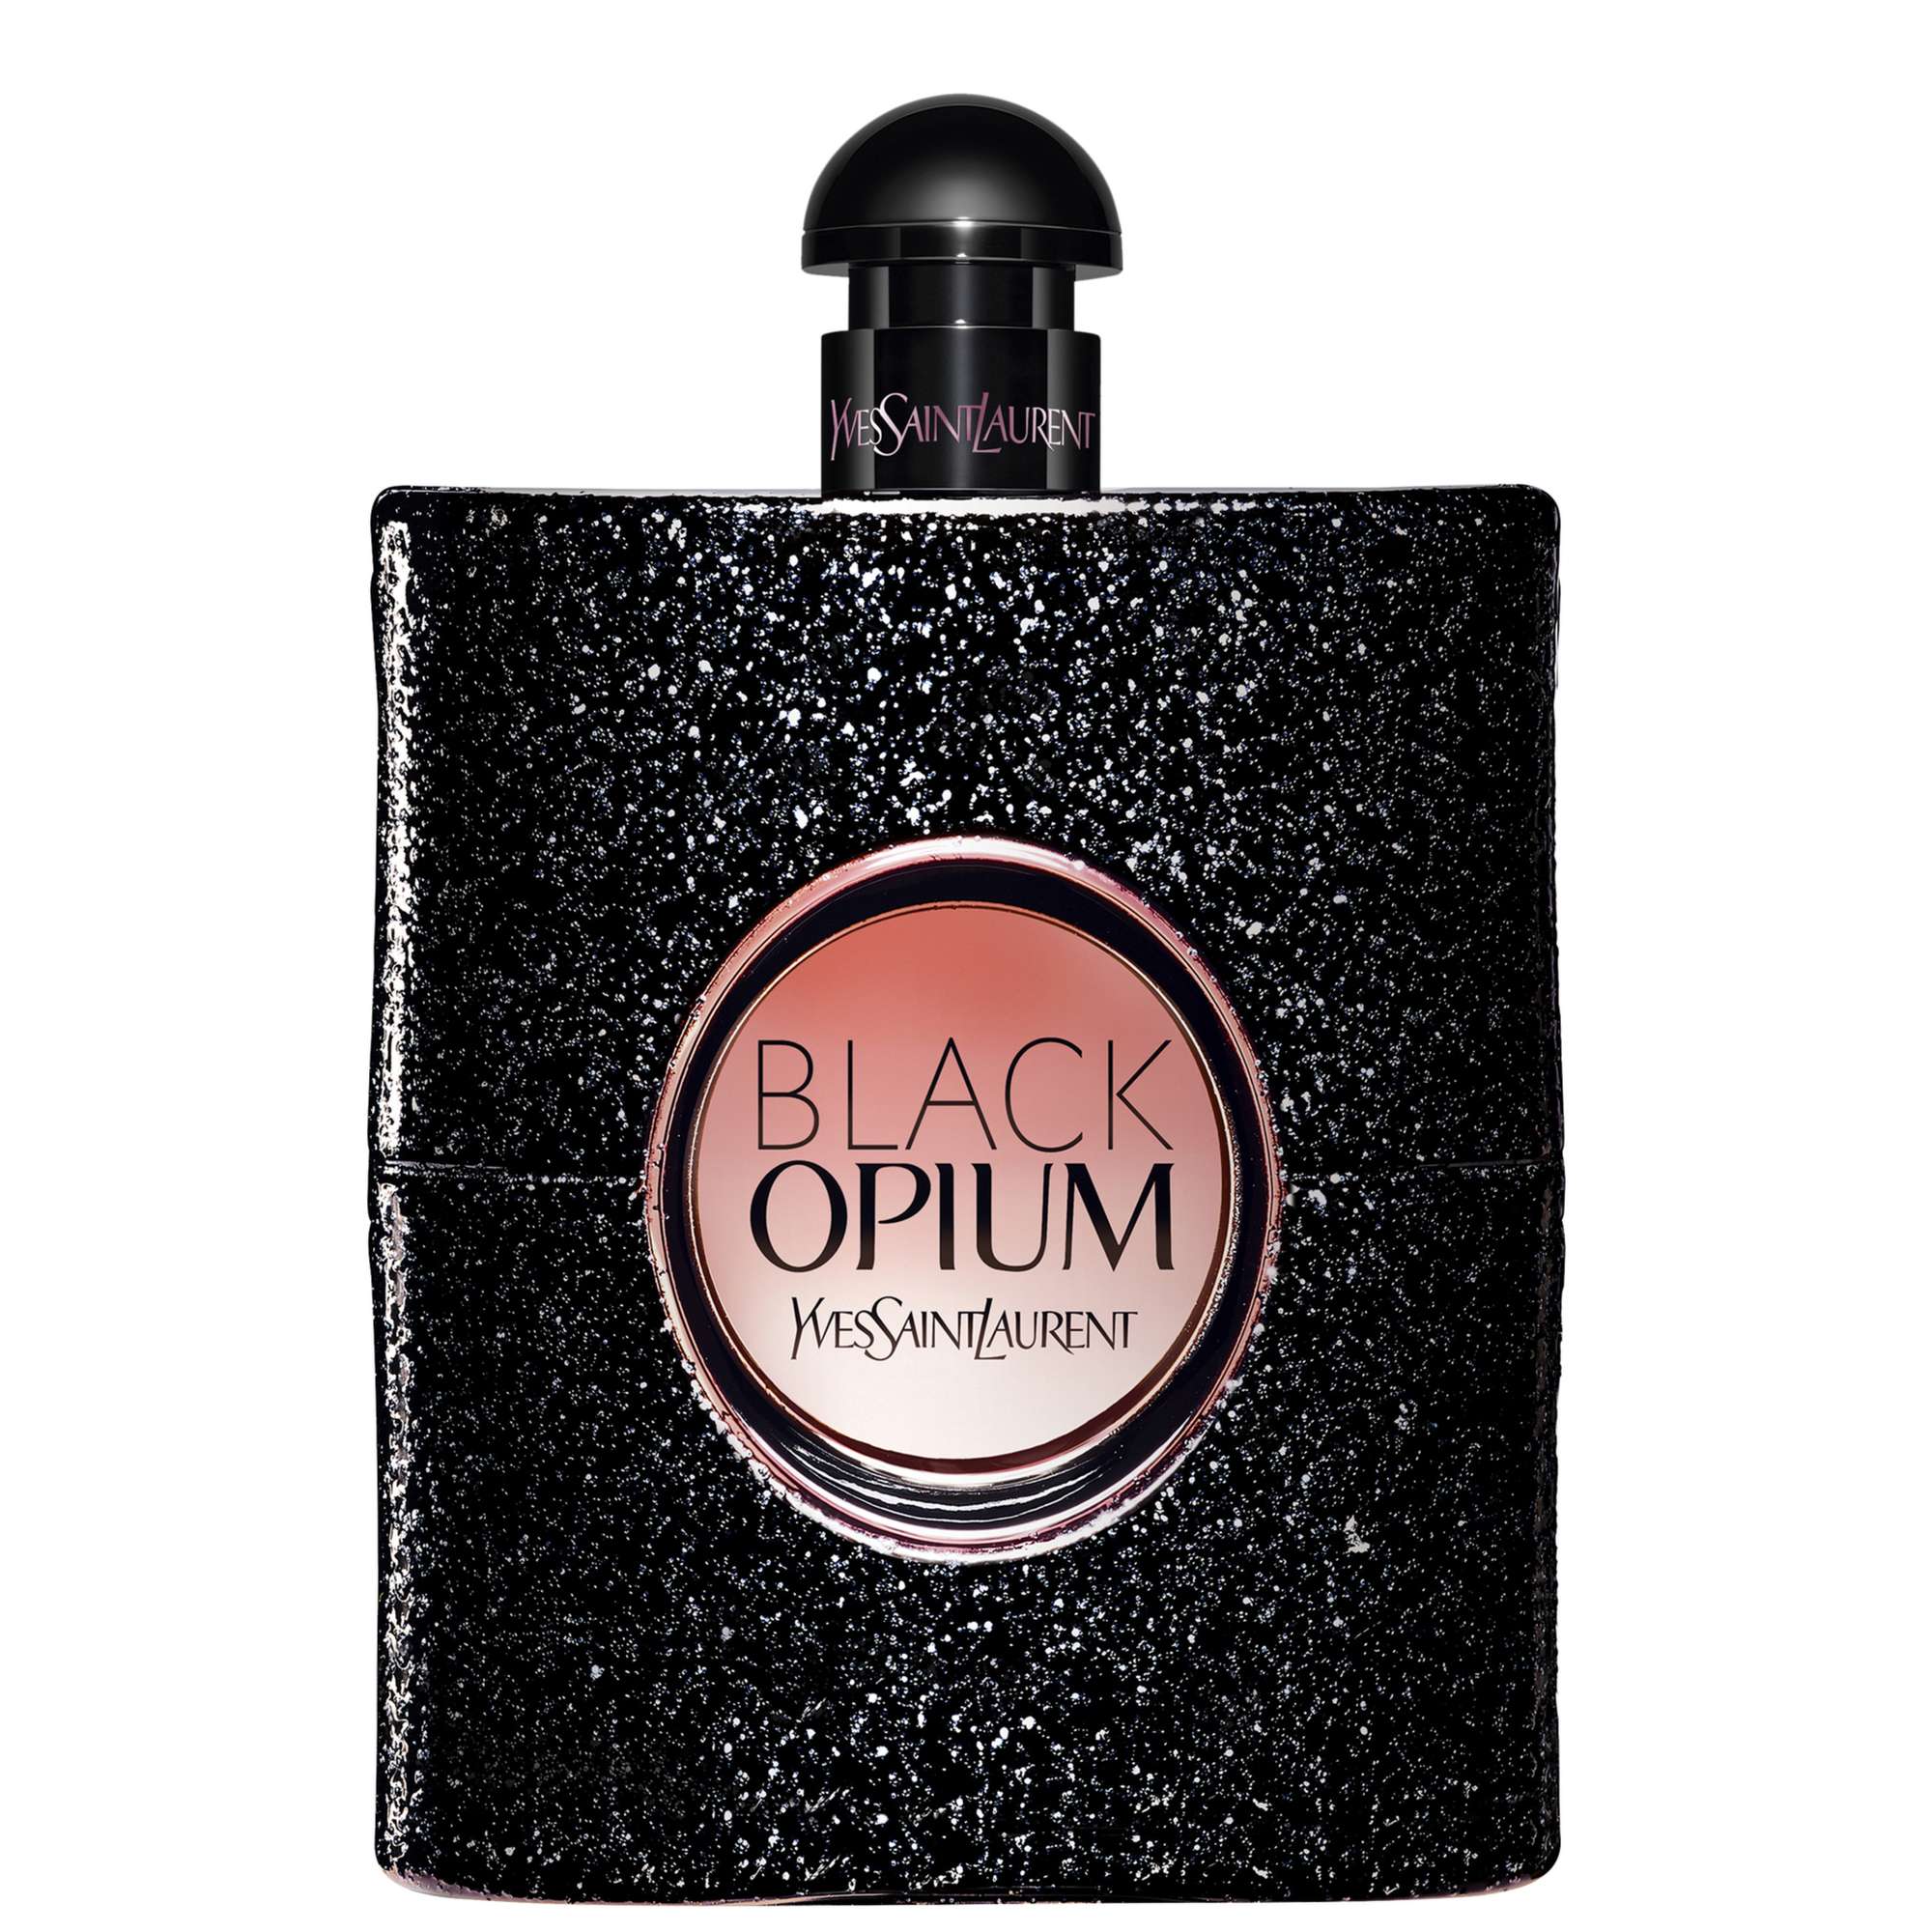 Photos - Women's Fragrance Yves Saint Laurent Black Opium Eau de Parfum Spray 150ml 